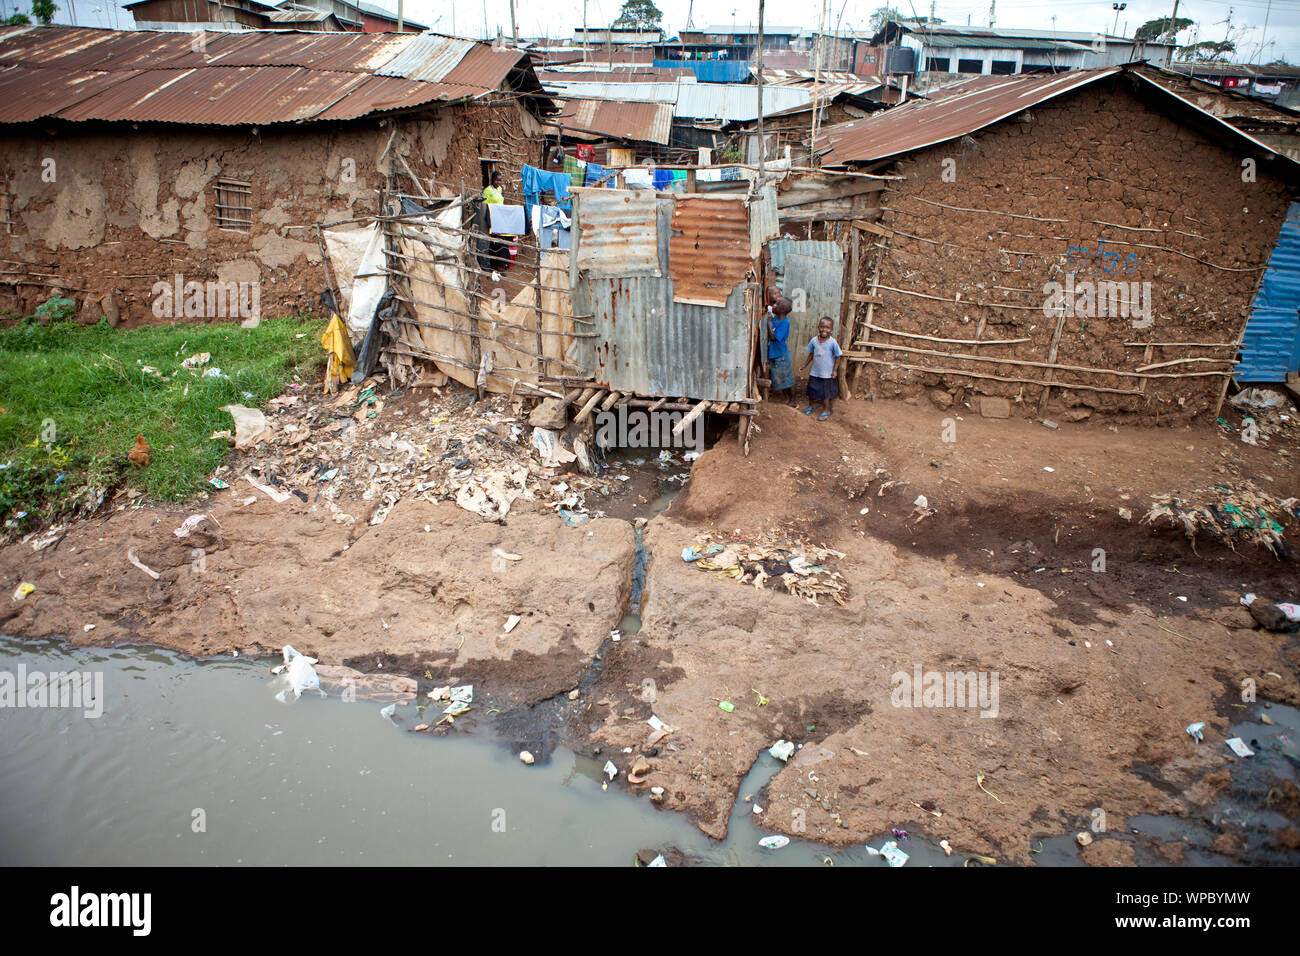 In KIBERA, KENIA - Dezember 6, 2010: Nicht identifizierte Kinder spielen in der Nähe von schmutziges Wasser in Kibera, dem größten städtischen Slum in Afrika. Stockfoto